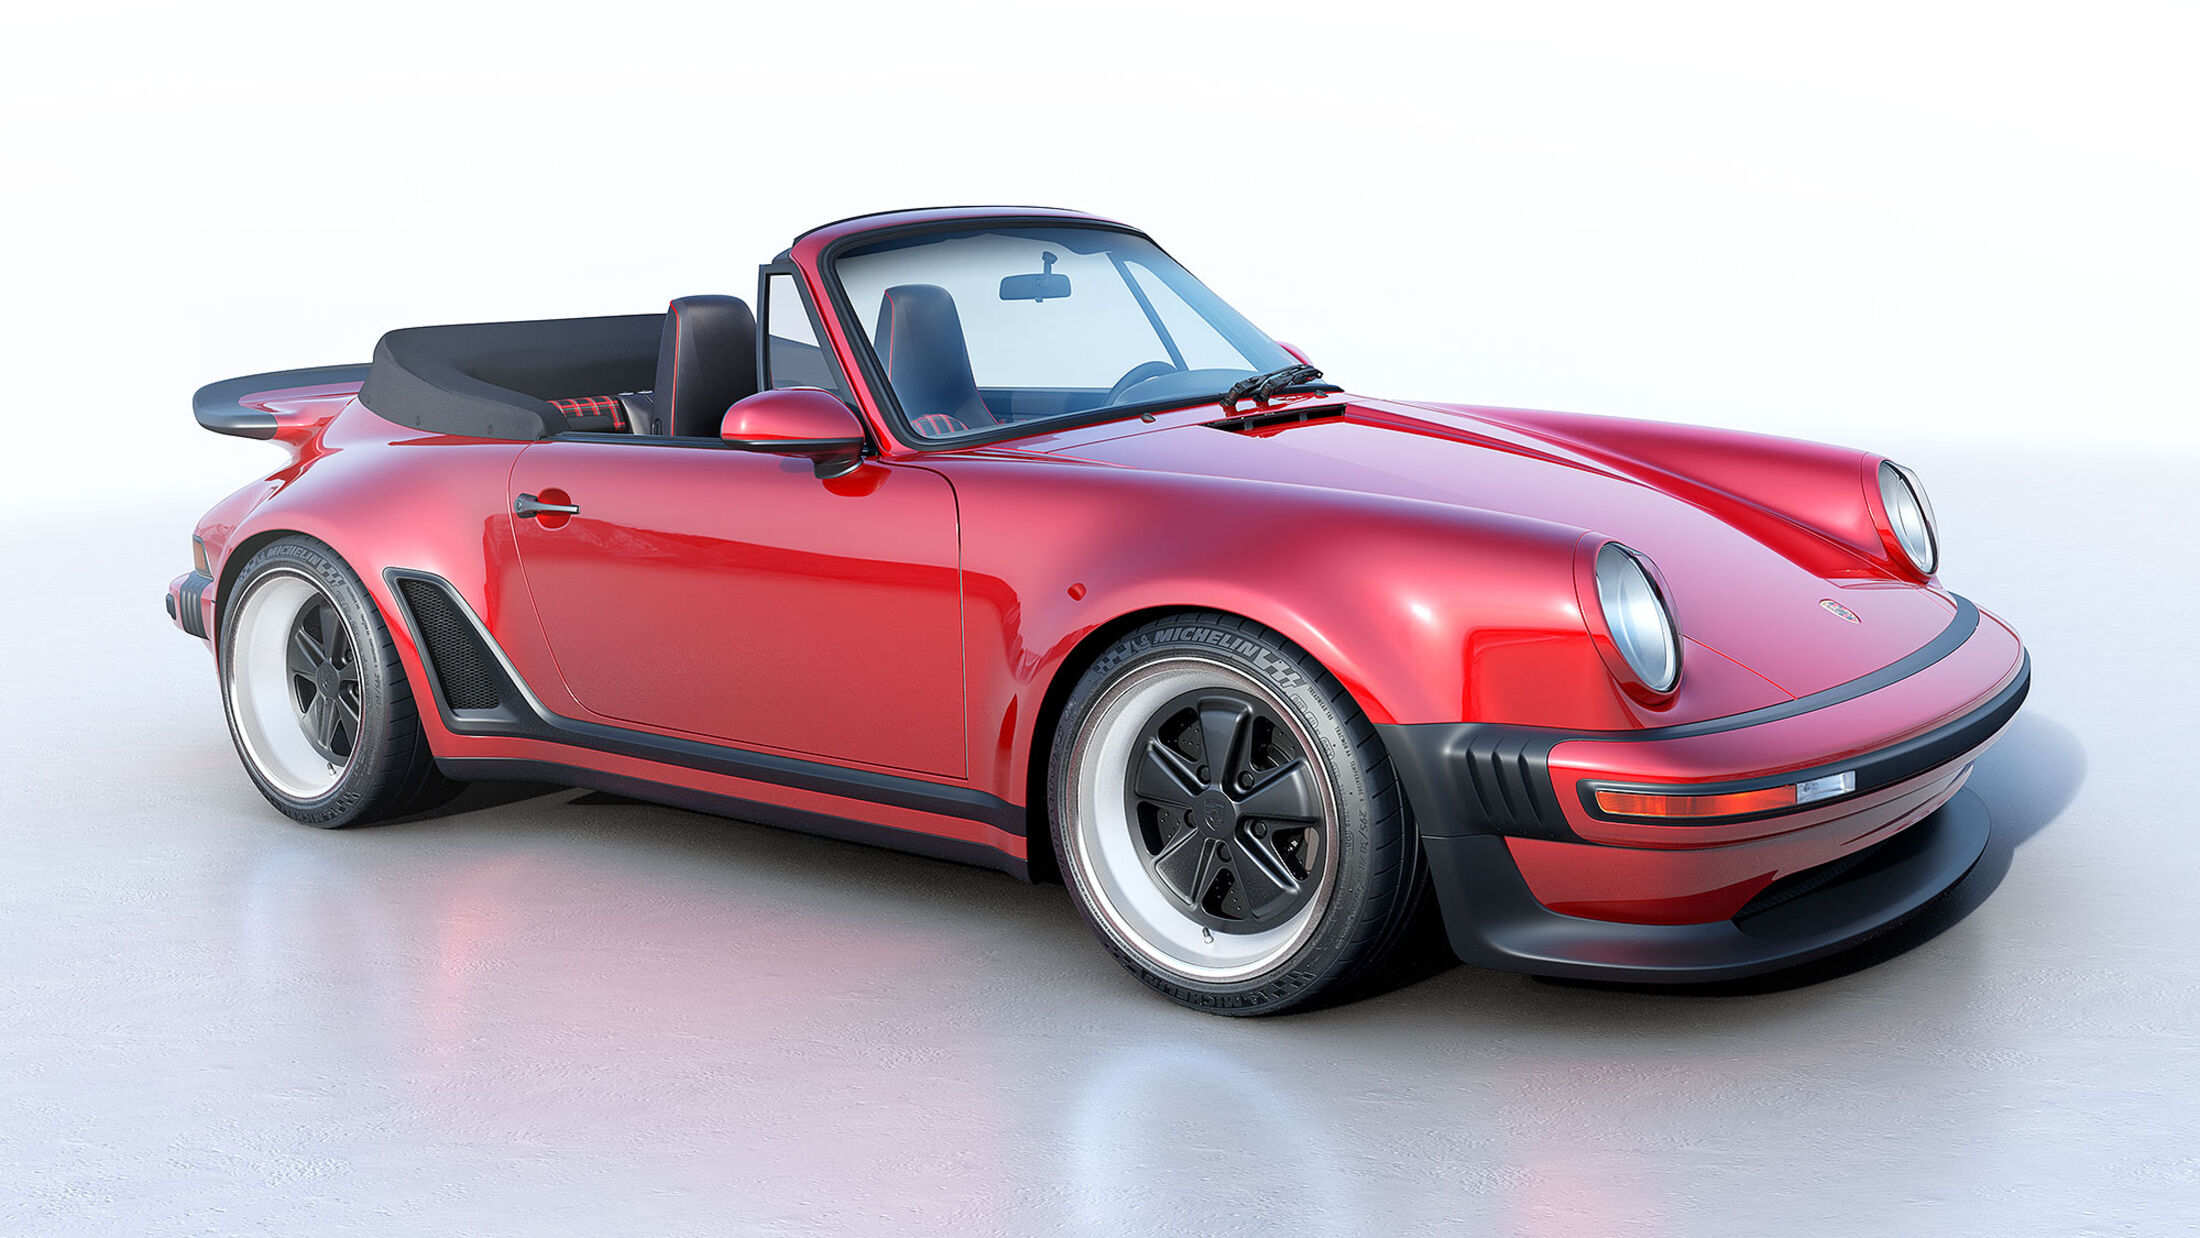 https://imgr1.auto-motor-und-sport.de/Singer-Porsche-964-Cabriolet-Turbo-Study-jsonLd16x9-ce3d9233-1926283.jpg